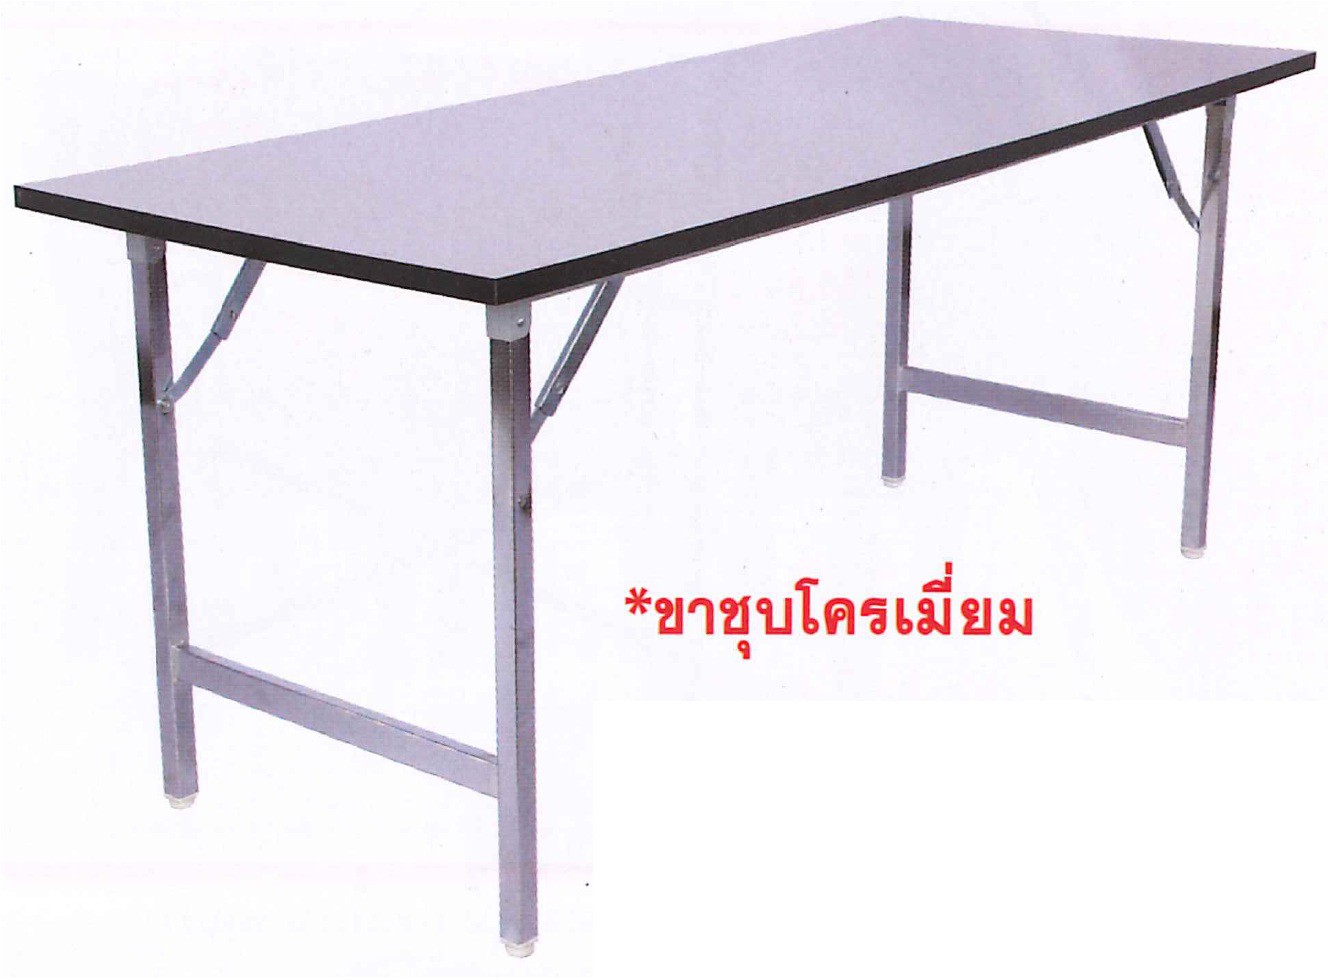 DG/TM75180,โต๊ะพับหน้าโฟเมก้า,โต๊ะพับ,โต๊ะพับอเนกประสงค์,โต๊ะพับขาคู่,โต๊ะอเนกประสงค์,โต๊ะโฟเมก้า,โต๊ะพับได้,โต๊ะ,table